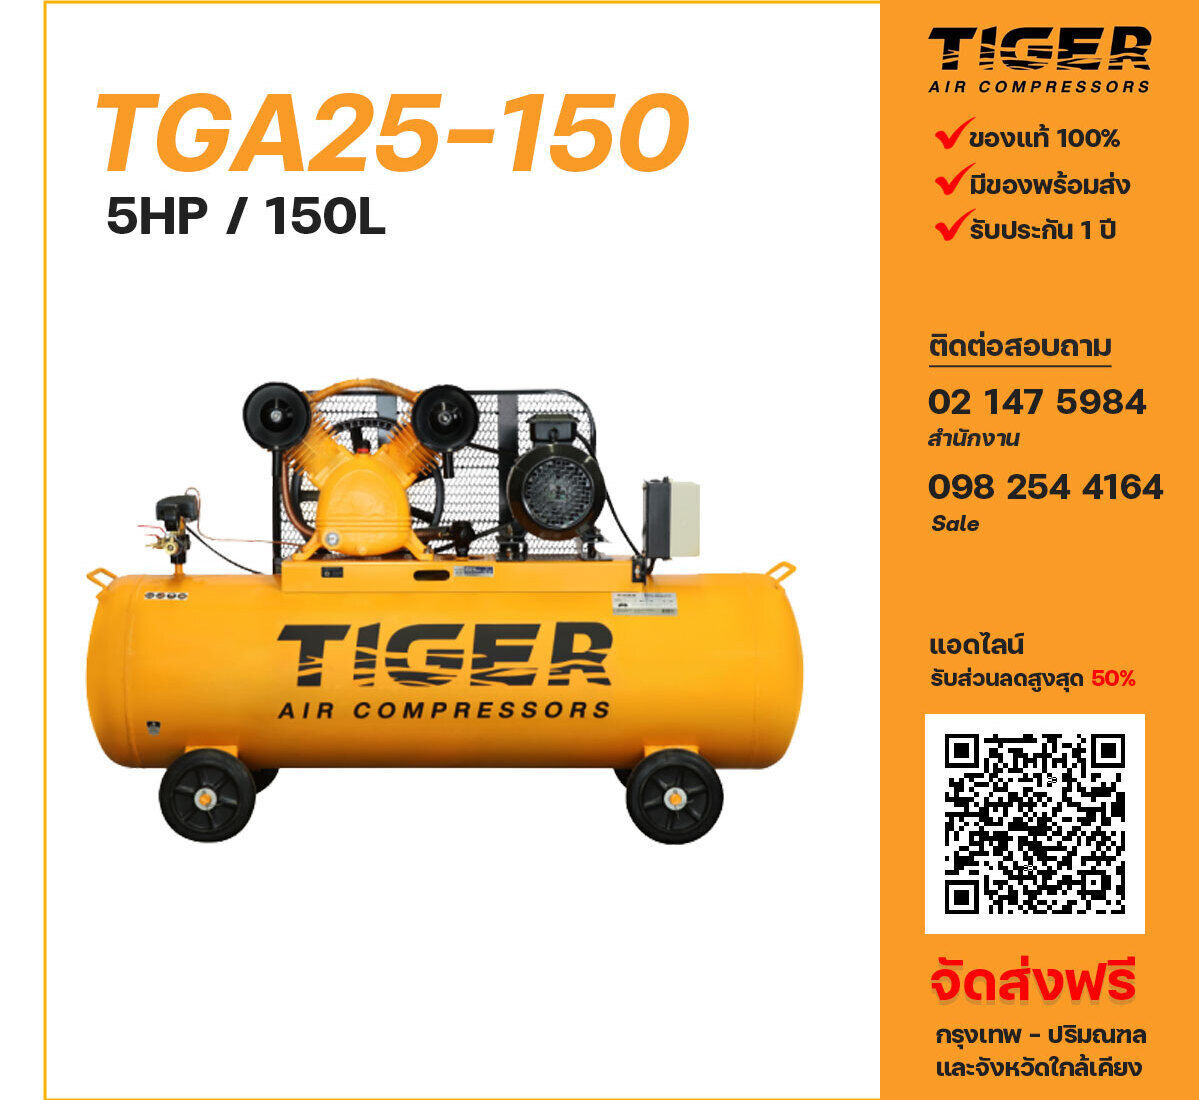 ปั๊มลมไทเกอร์ TIGER TGA25-150 380V ปั๊มลมลูกสูบ ขนาด 2 สูบ 5 แรงม้า 150 ลิตร TIGER พร้อมมอเตอร์ ไฟ 380V ส่งฟรี กรุงเทพฯ-ปริมณฑล รับประกัน 1 ปี